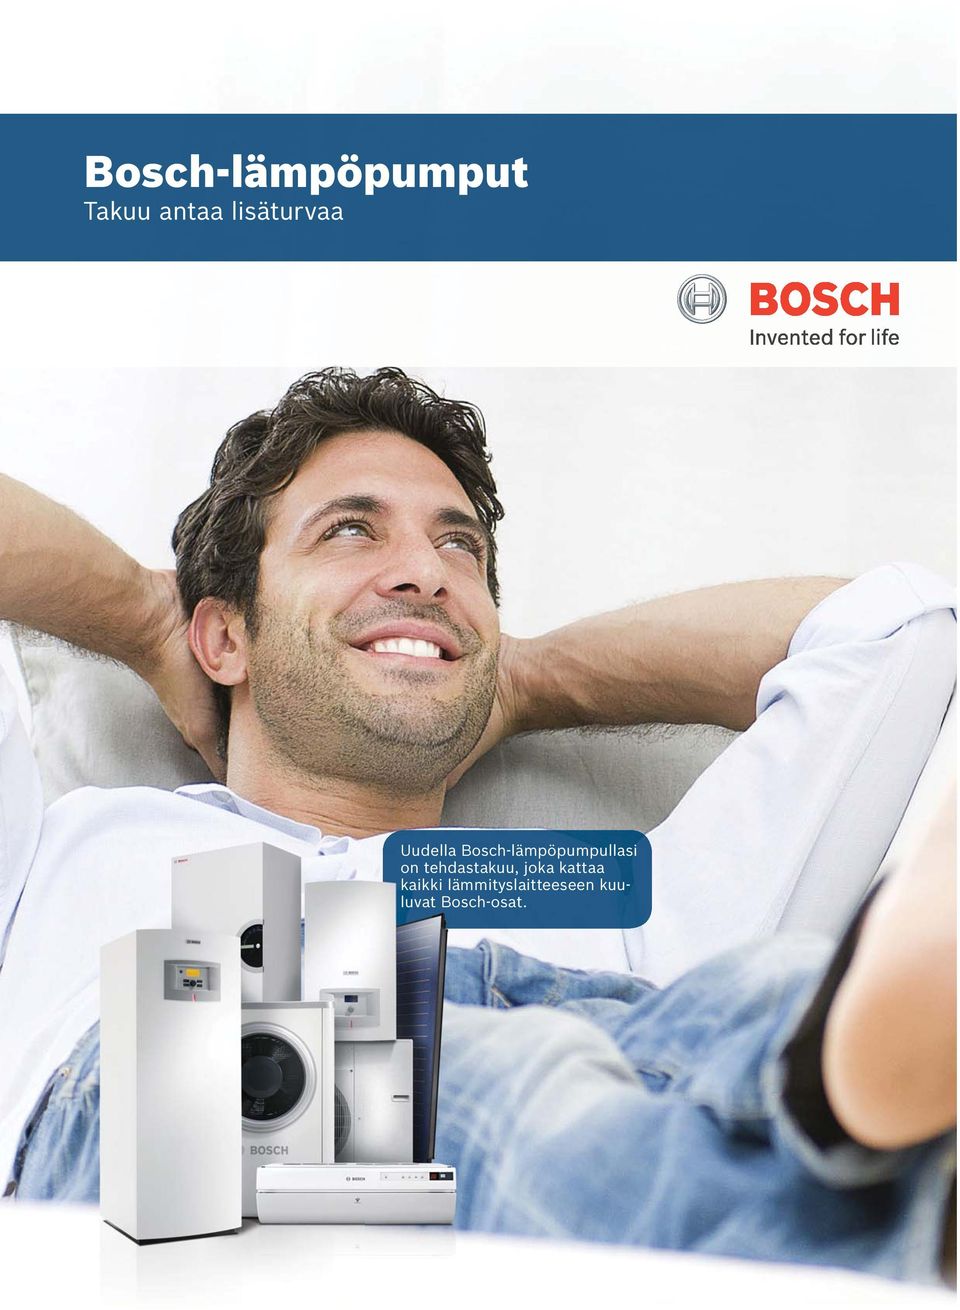 Bosch-lämpöpumpullasi on